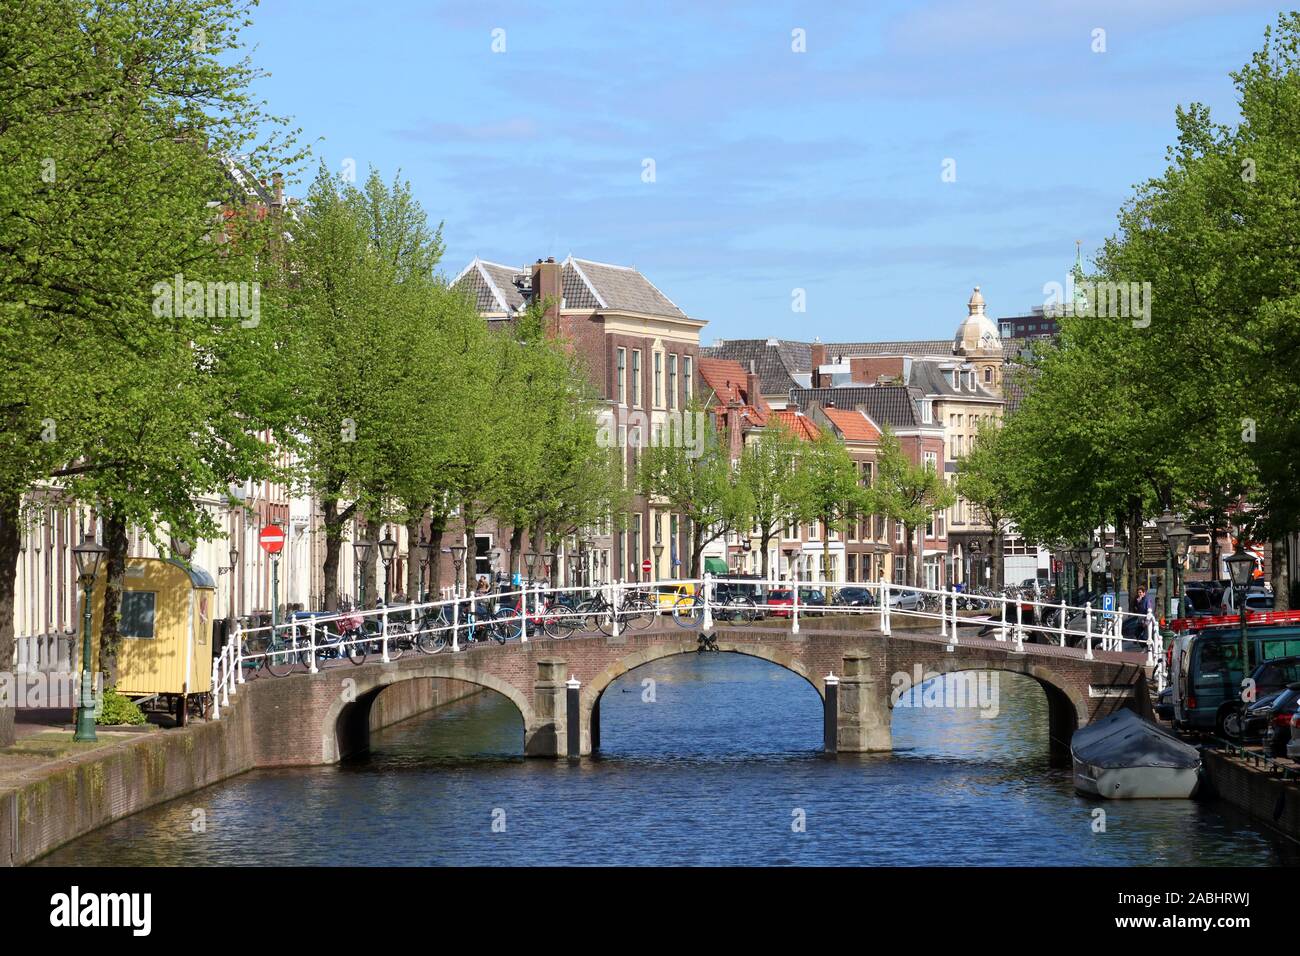 Anzeigen suchen an der Rapenburg Kanal auf der Doelenbrug, eine Brücke in der Altstadt von Leiden, Südholland, Niederlande an einem sonnigen Frühlingstag. Stockfoto